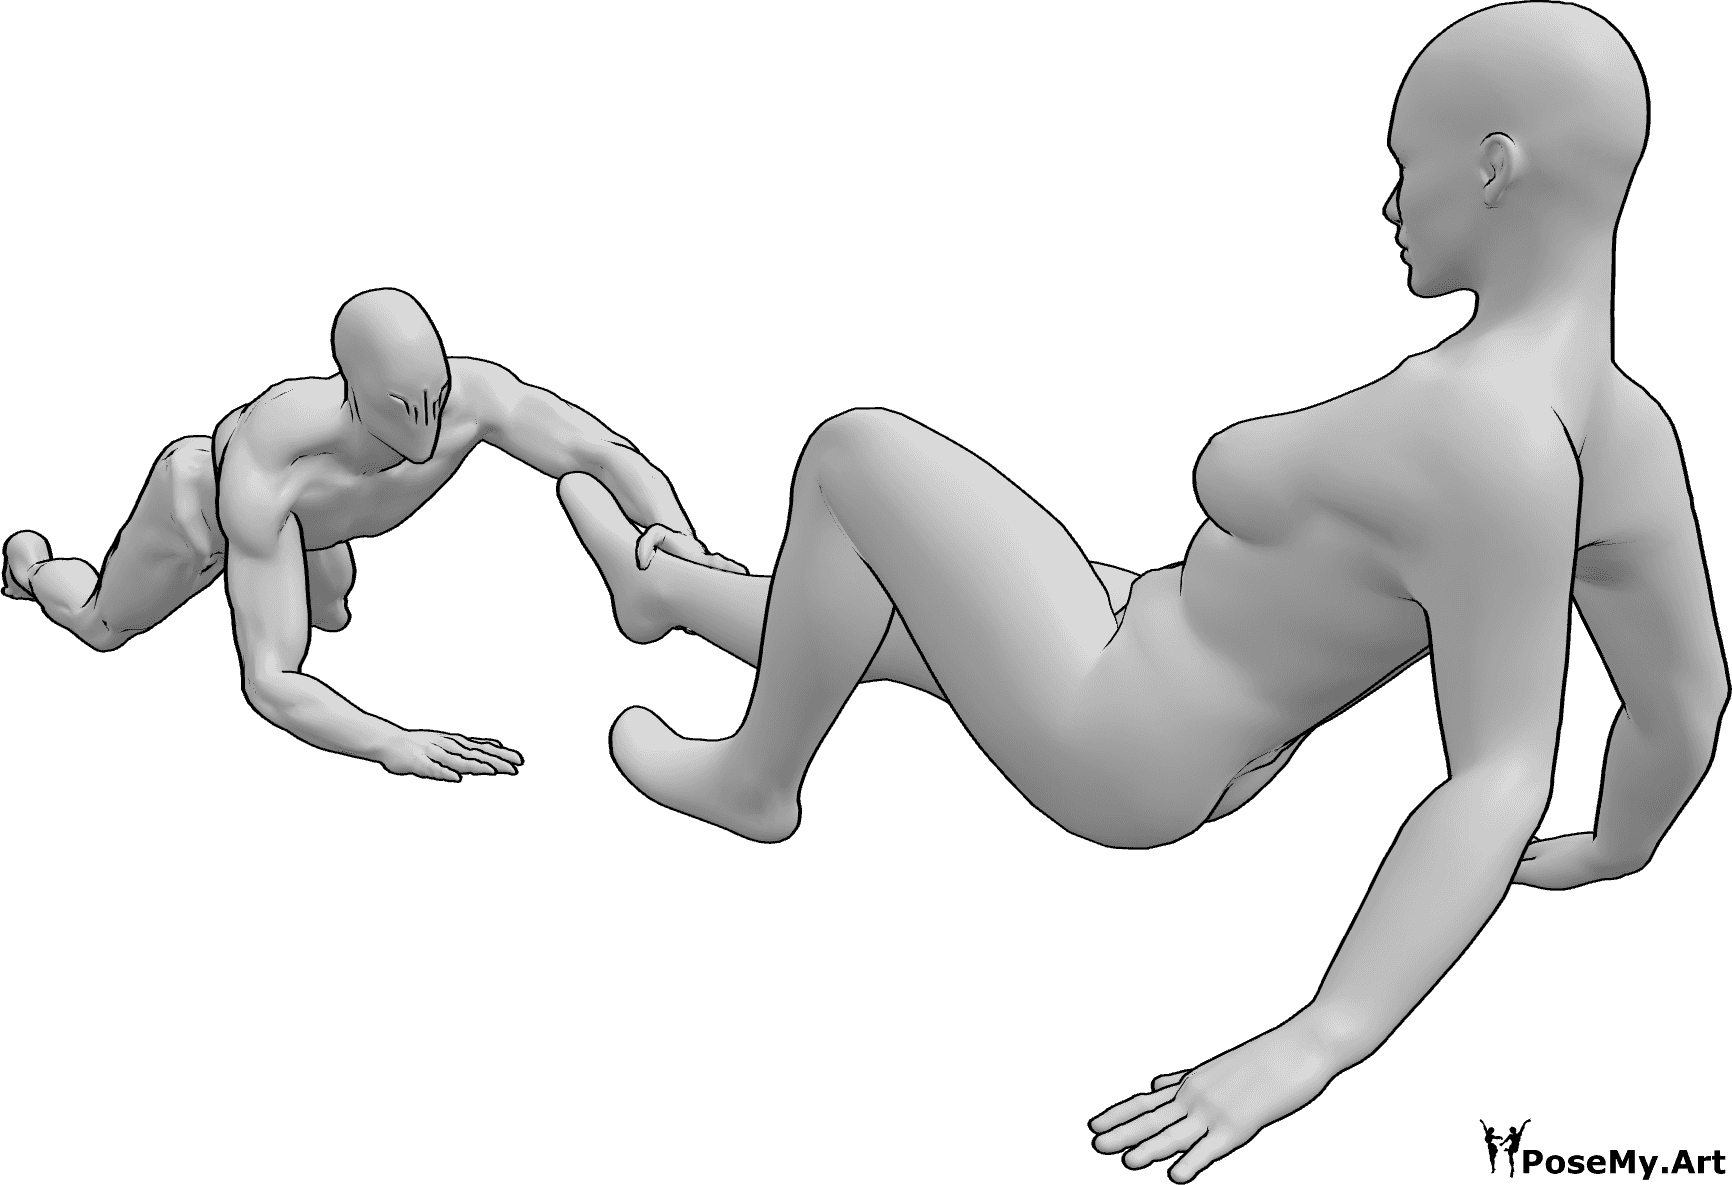 Référence des poses- Zombie attrape femme pose - Le zombie attrape la jambe de la femme, qui tente de se libérer.